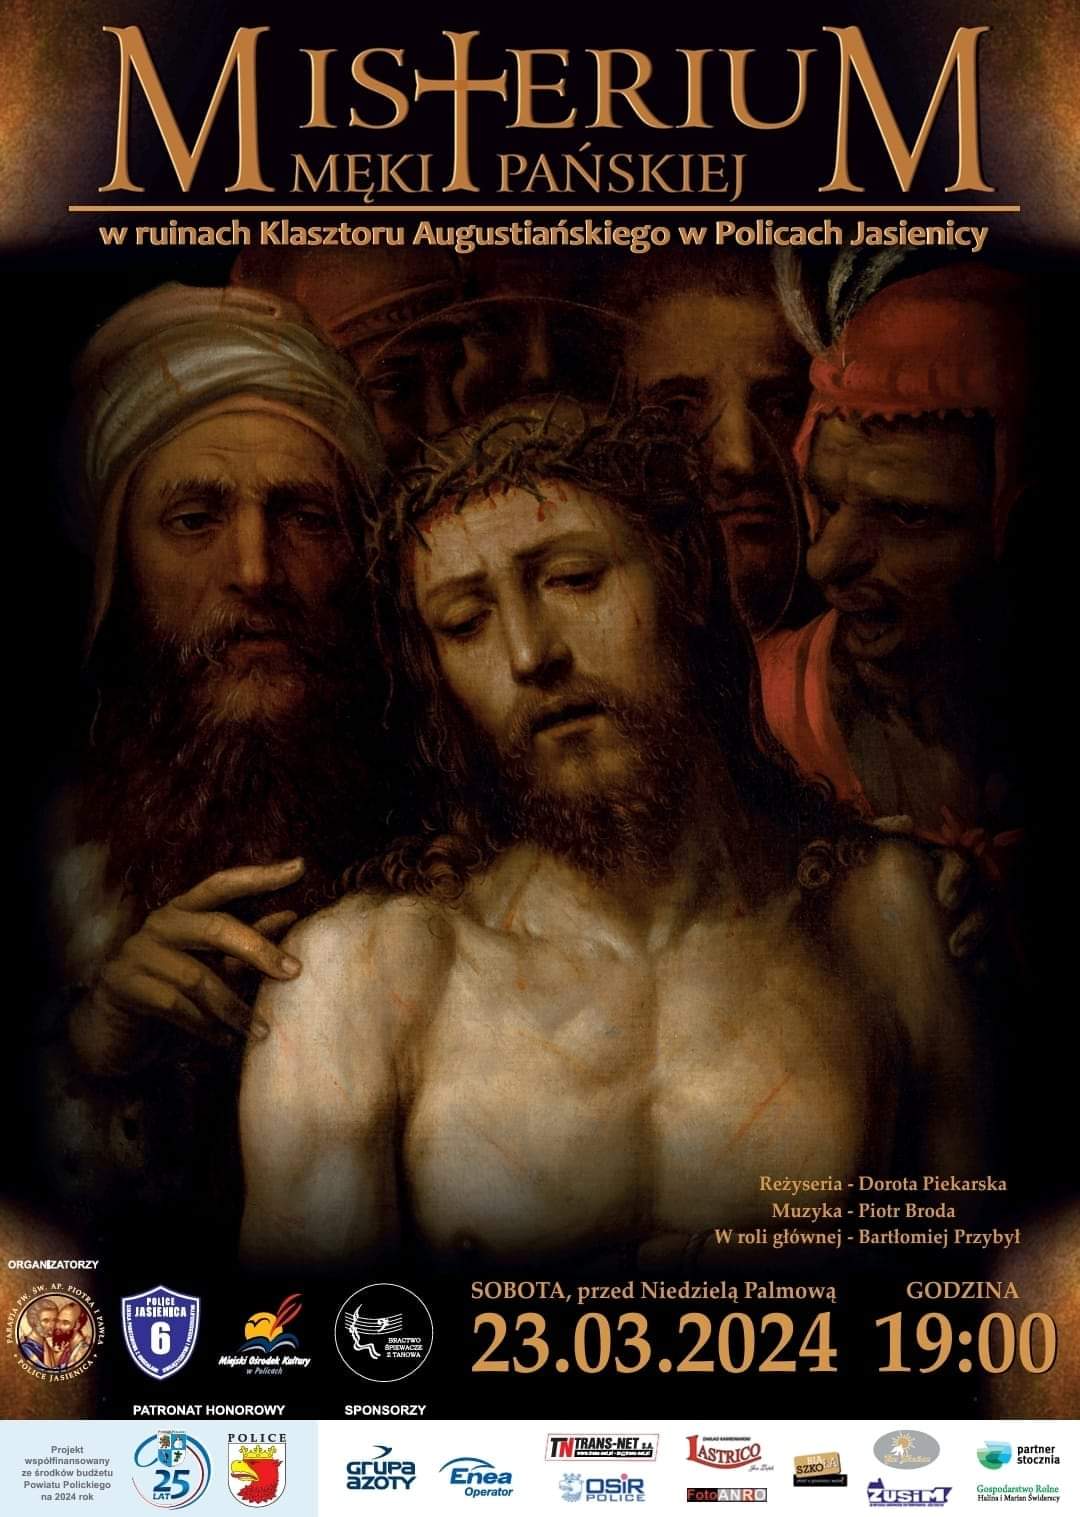 Plakat informujący o wydarzeniu Misterium Męki Pańskiej, w tle Jezus